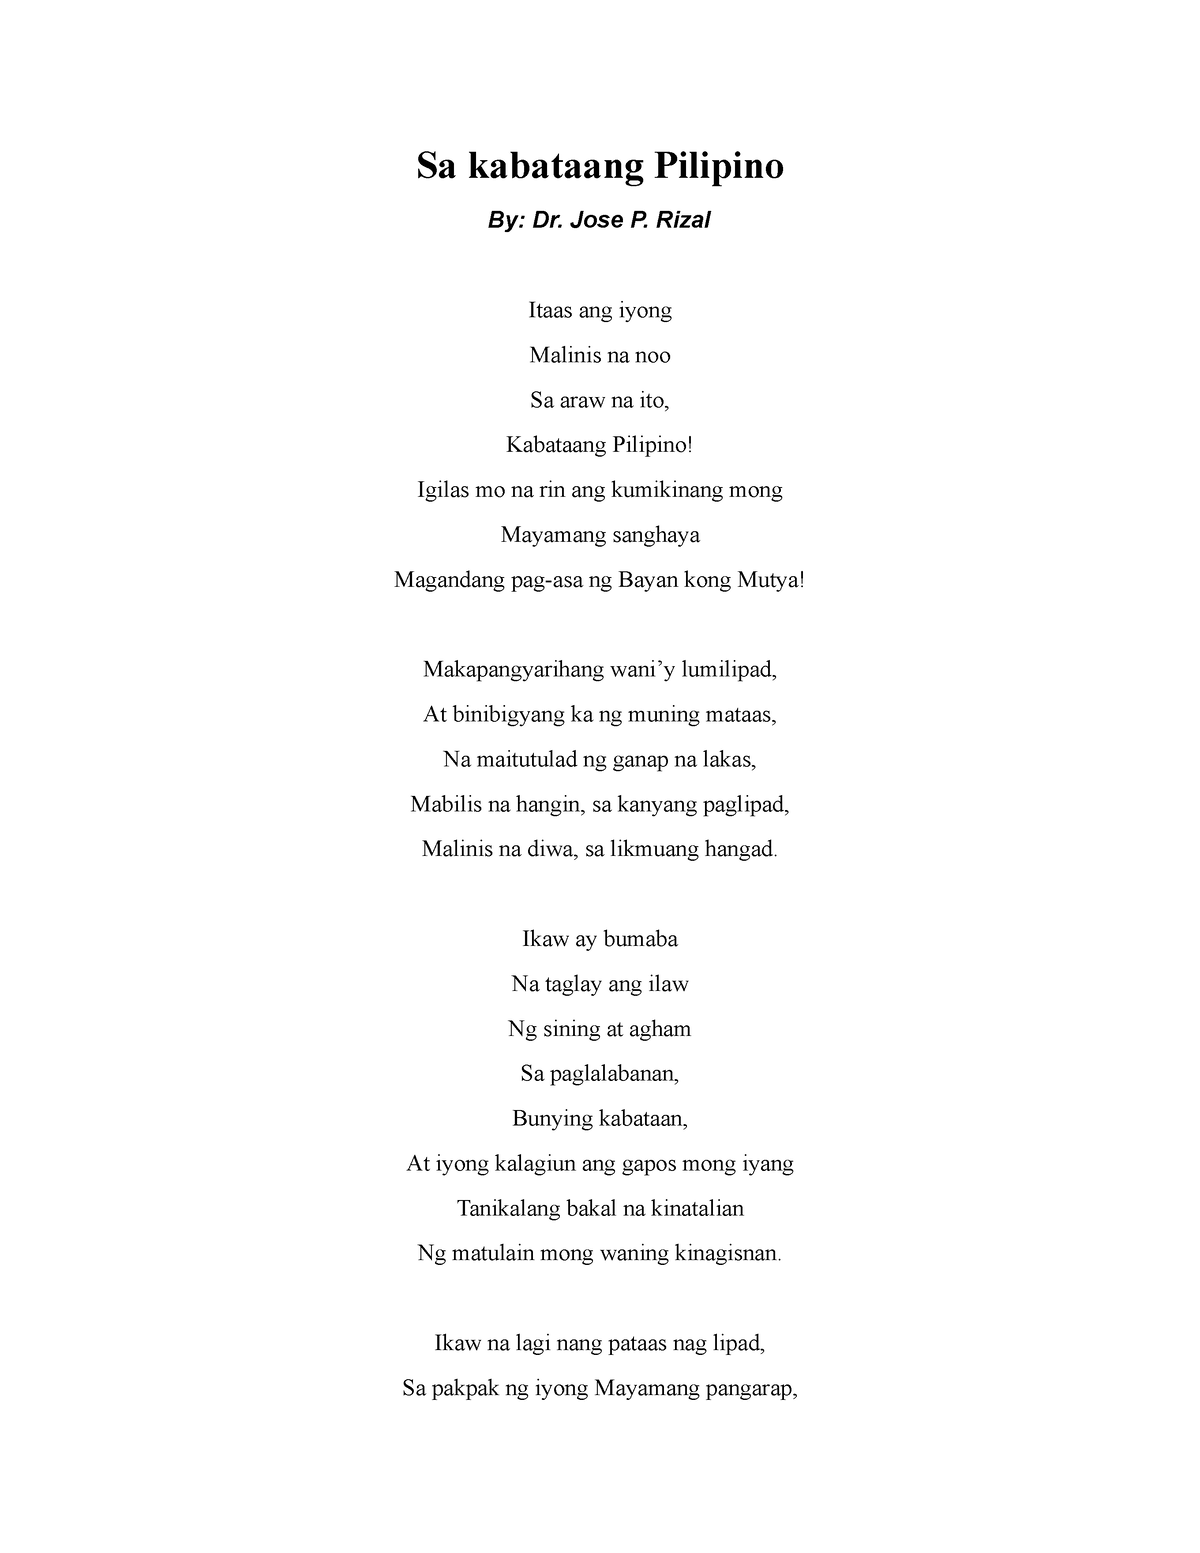 Sa Kabataang Pilipino A Poem Written By Dr Jose P Rizal Sa Hot Sex Picture 5648